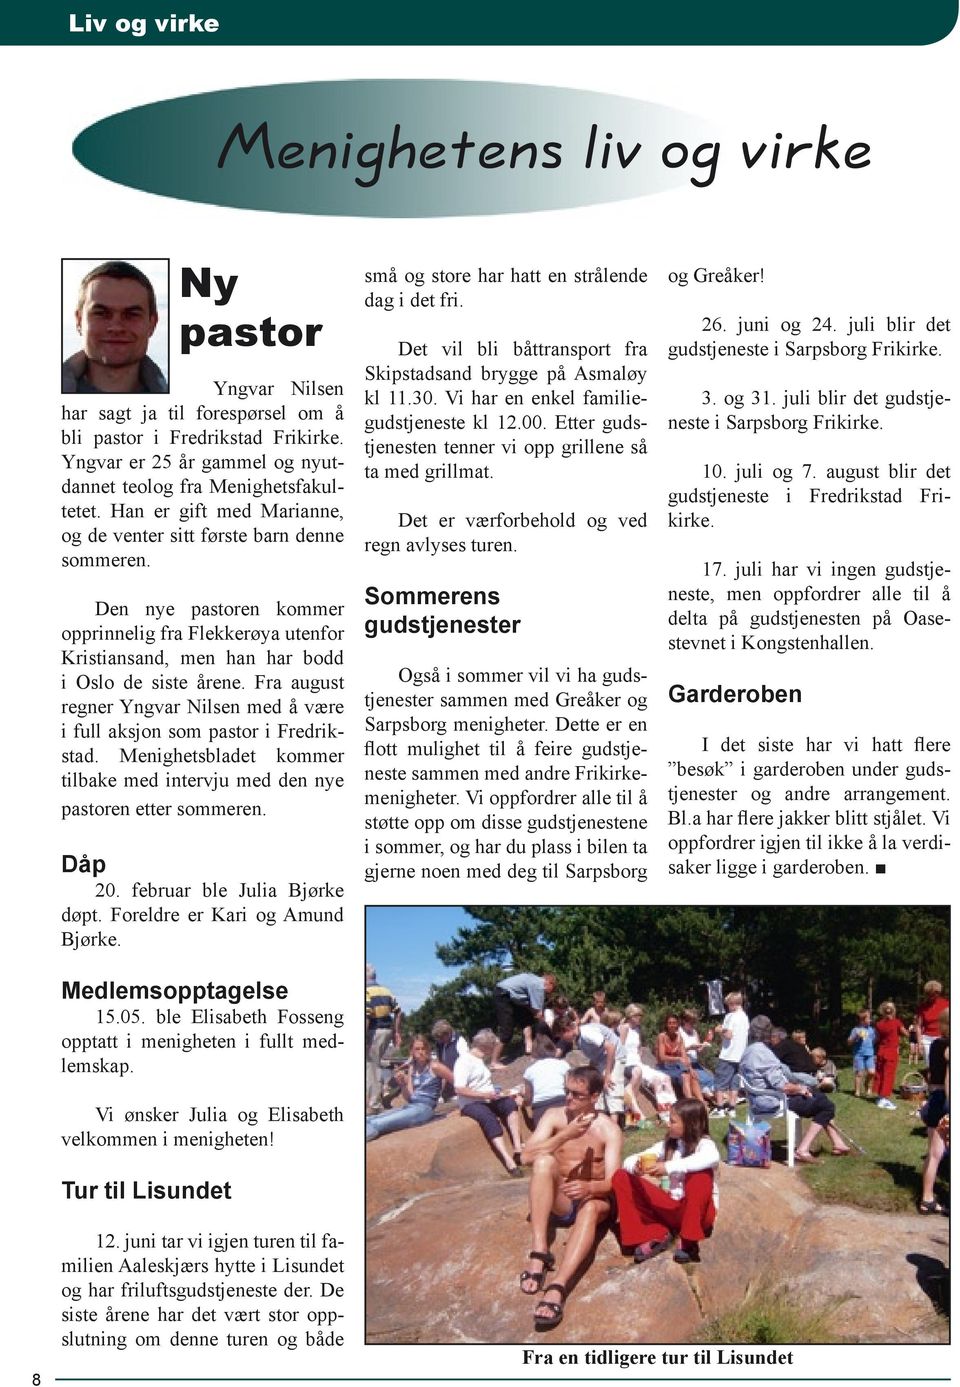 Fra august regner Yngvar Nilsen med å være i full aksjon som pastor i Fredrikstad. Menighetsbladet kommer tilbake med intervju med den nye pastoren etter sommeren. Dåp 20.